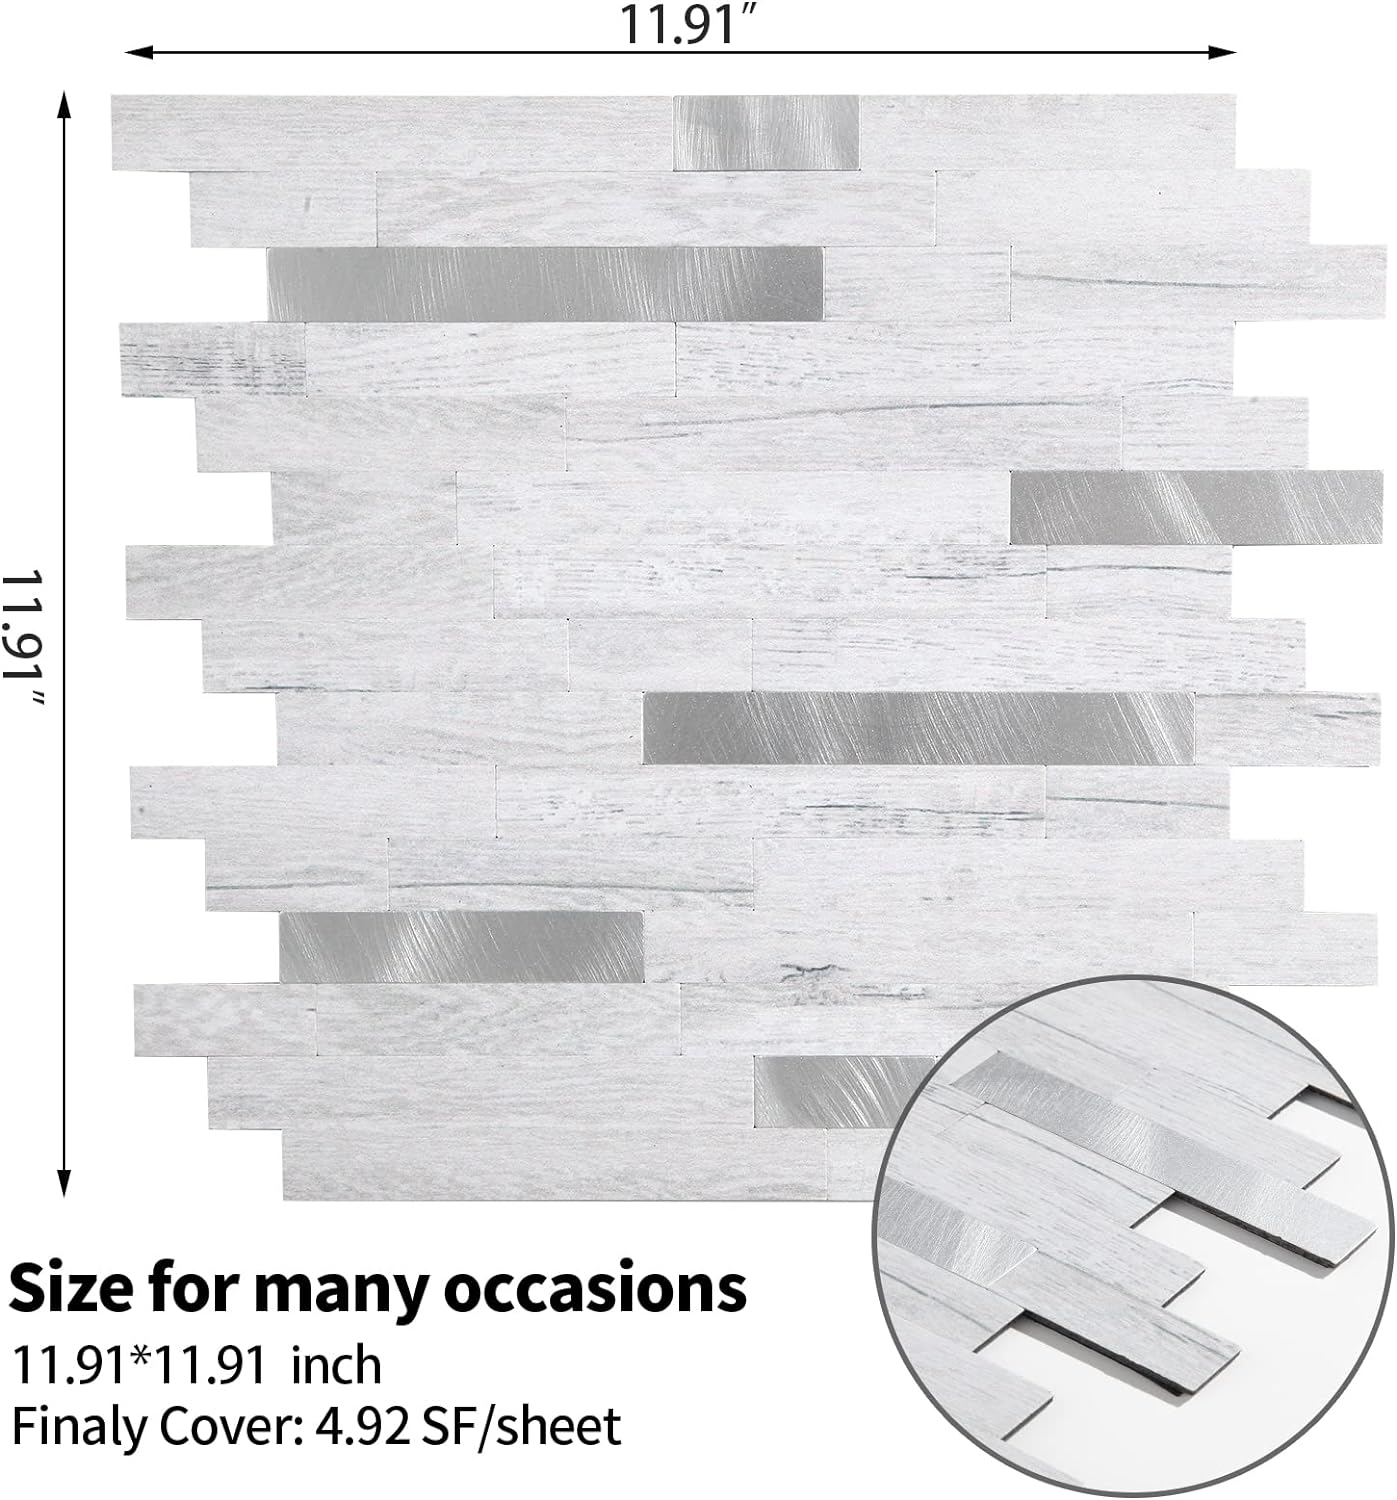 PVC backsplash tile size image Linear Blend in Teak Wood